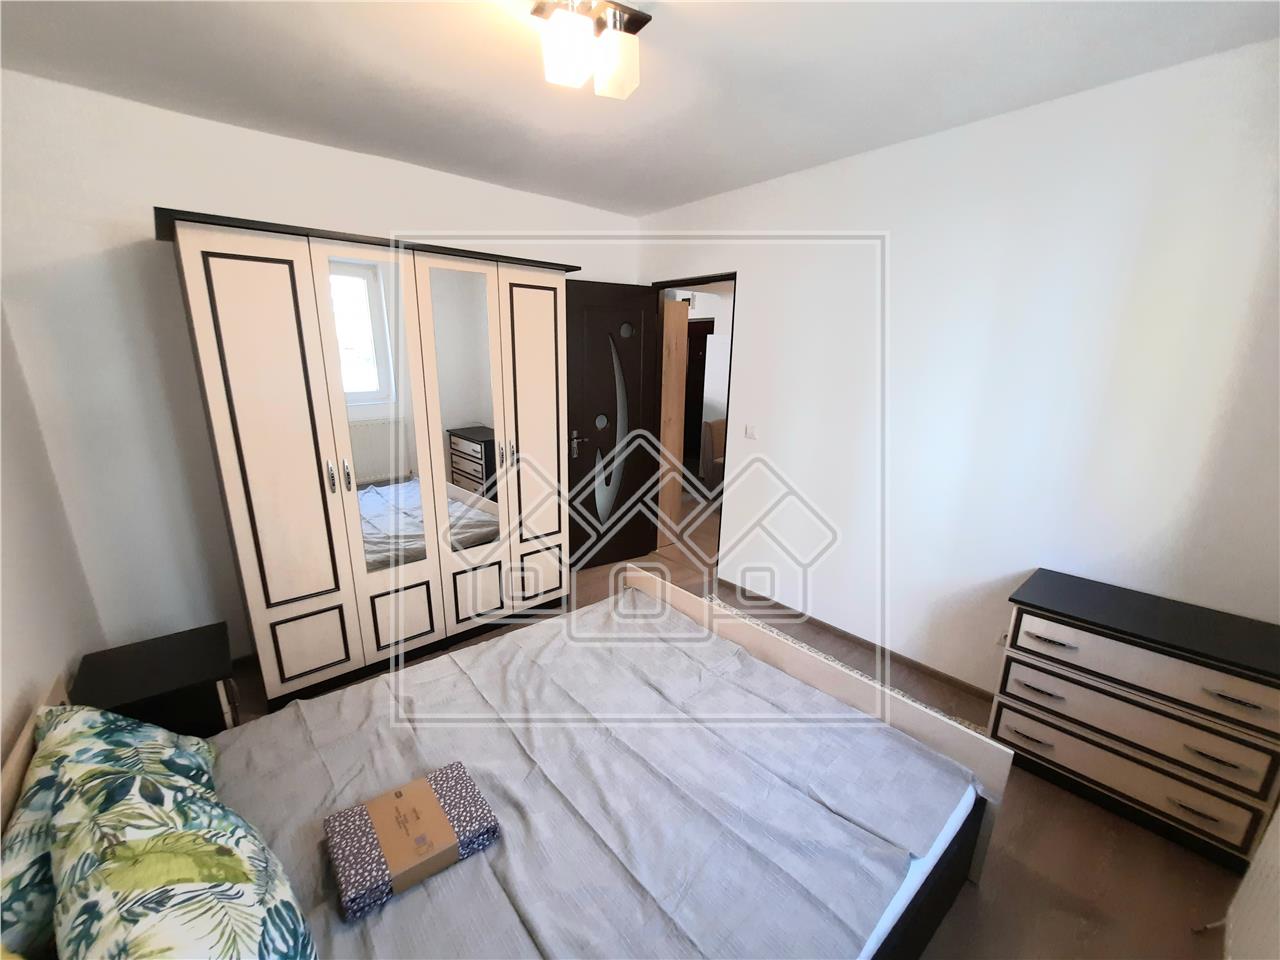 Apartment for rent in Alba Iulia - 2 rooms - 35 sqm - Cetate area